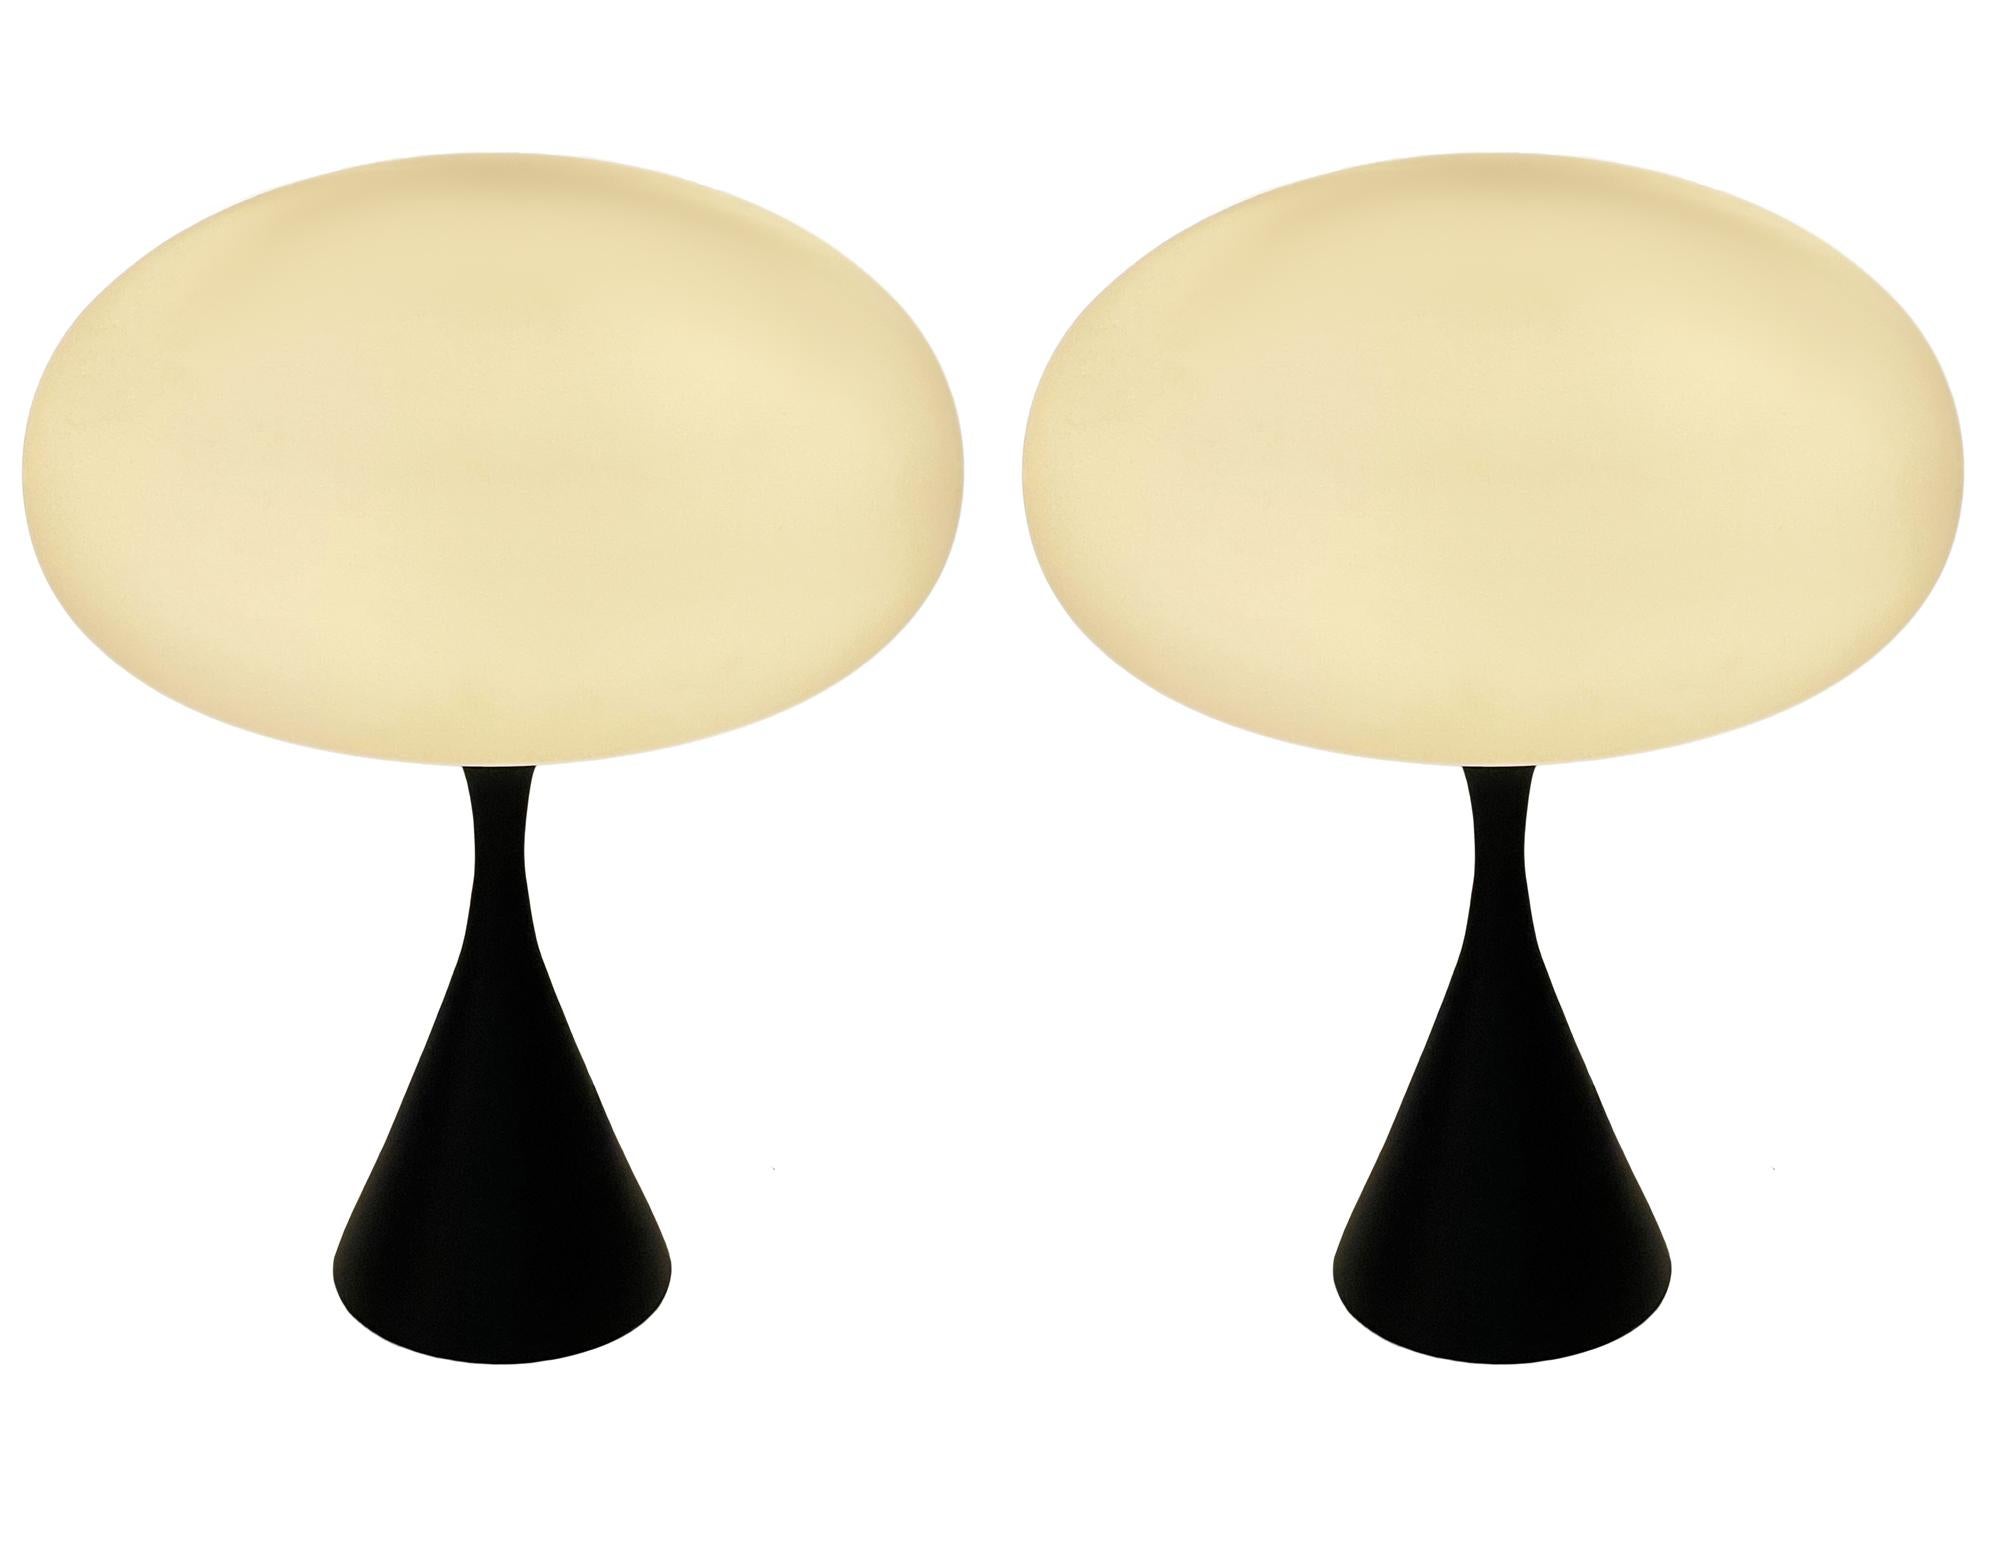 Ein hübsches Paar passender Tischlampen in konischer Pilzform nach Laurel Lamp Company. Die Leuchte verfügt über einen Sockel aus Aluminiumguss mit schwarzer, satinierter Pulverbeschichtung und einen mundgeblasenen Lampenschirm aus Milchglas. Der